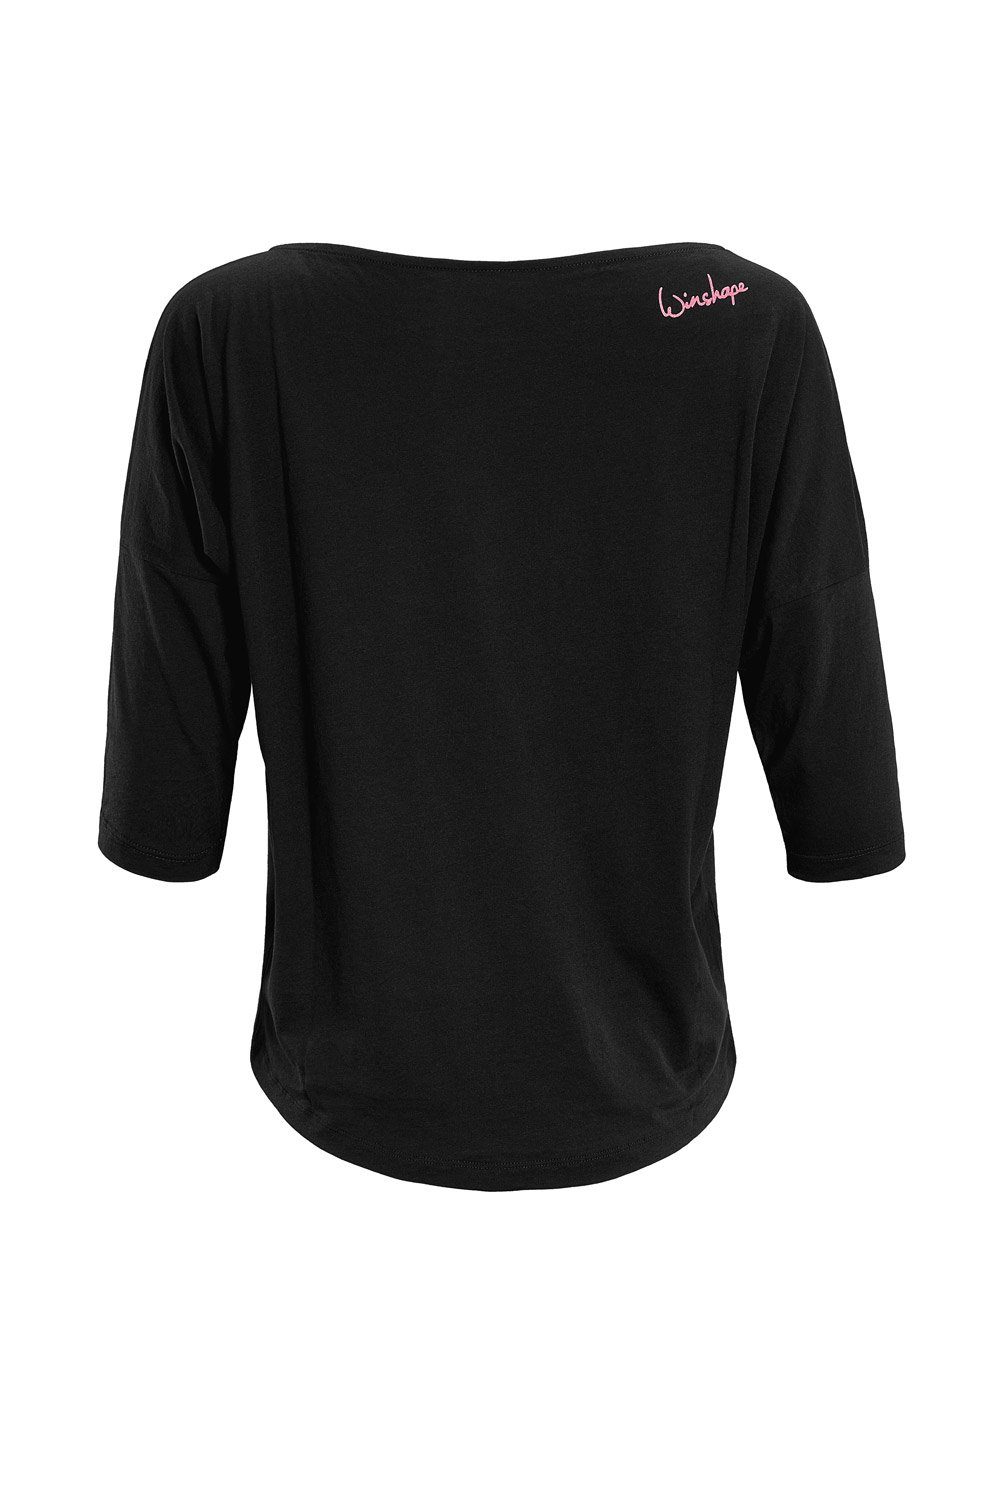 Winshape 3/4-Arm-Shirt geeignet MCS001 pinkem Sport Neon mit Super Glitzer-Aufdruck, ultra für und Freizeit leicht